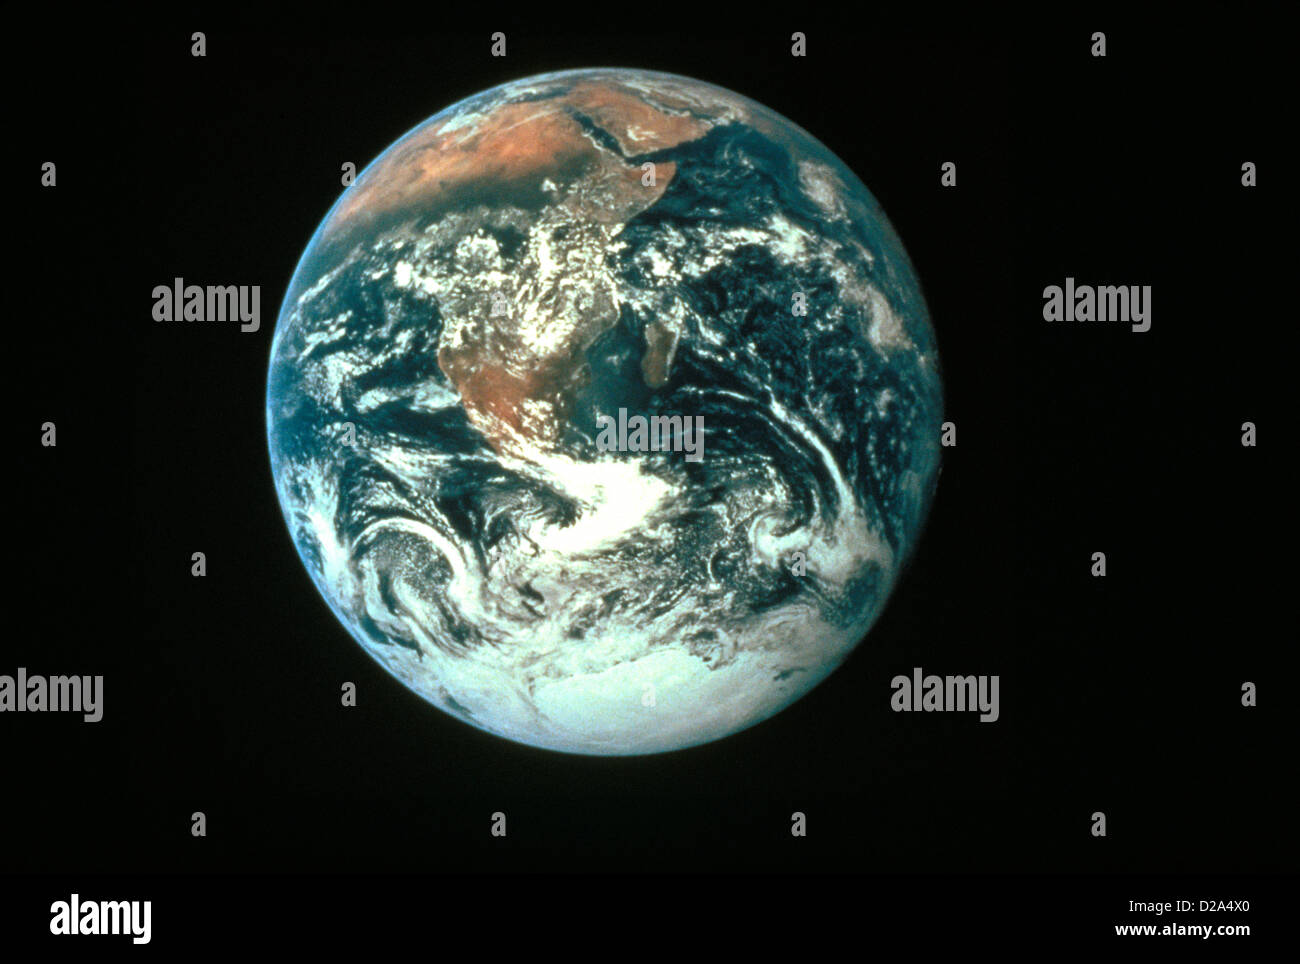 La planète Terre vue de l'espace ; l'Afrique et l'Antarctique Visible Banque D'Images